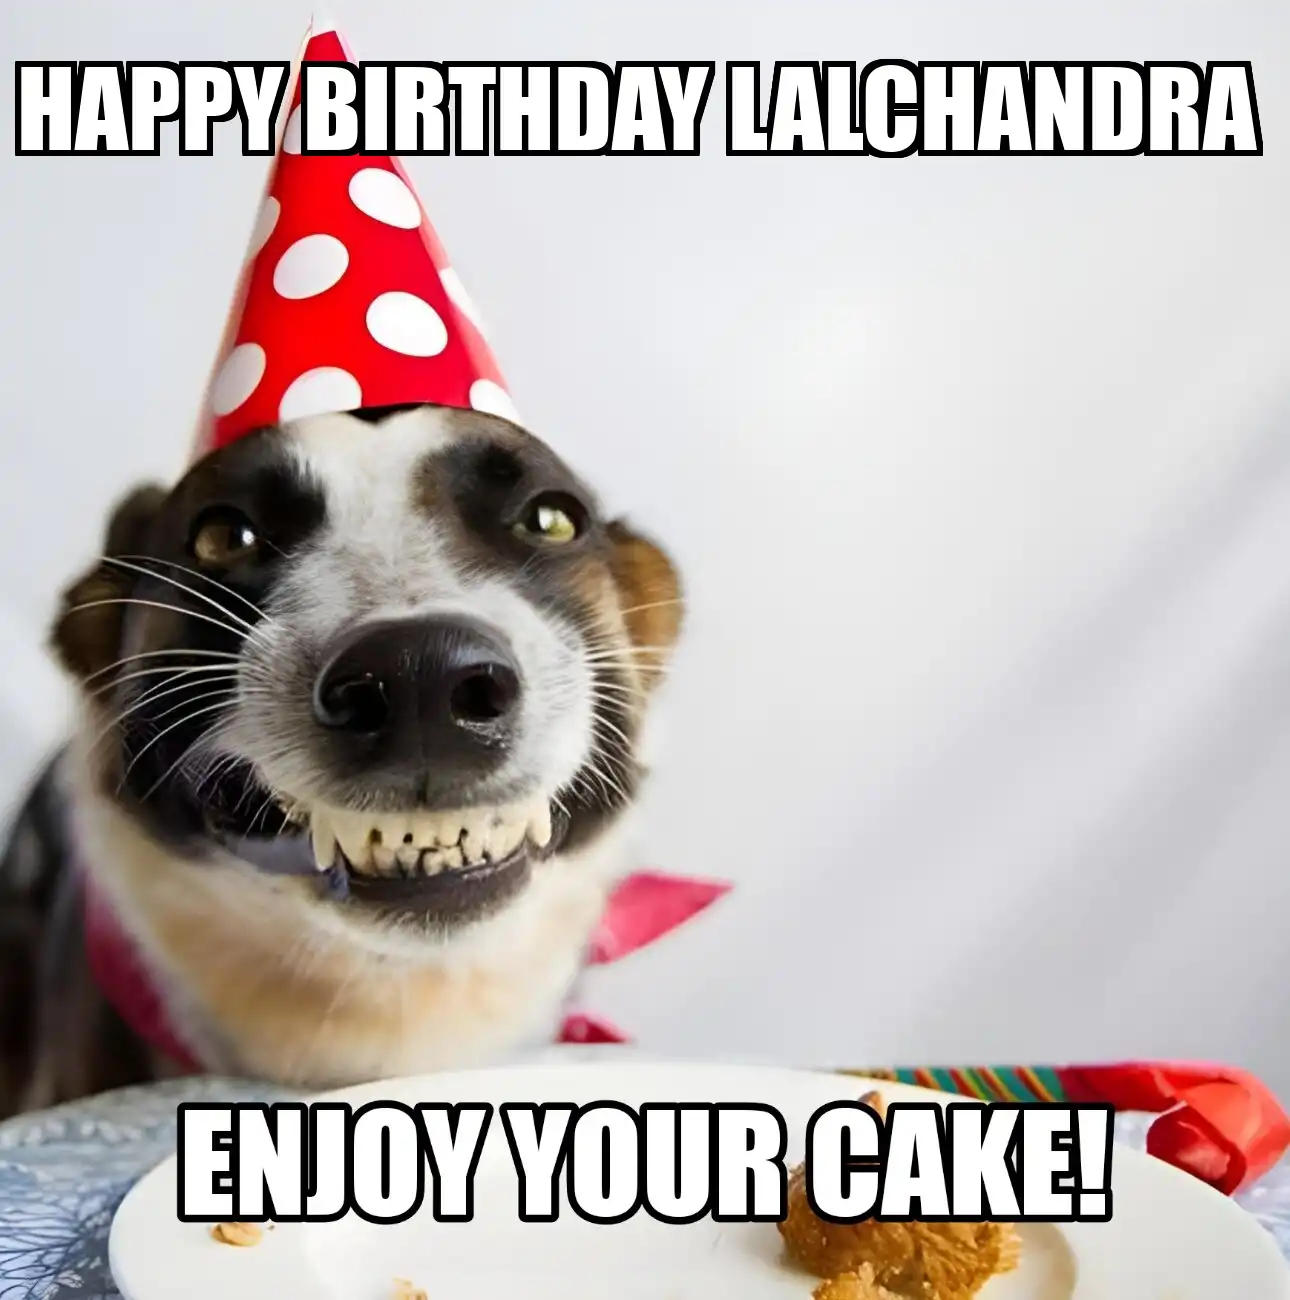 Happy Birthday Lalchandra Enjoy Your Cake Dog Meme